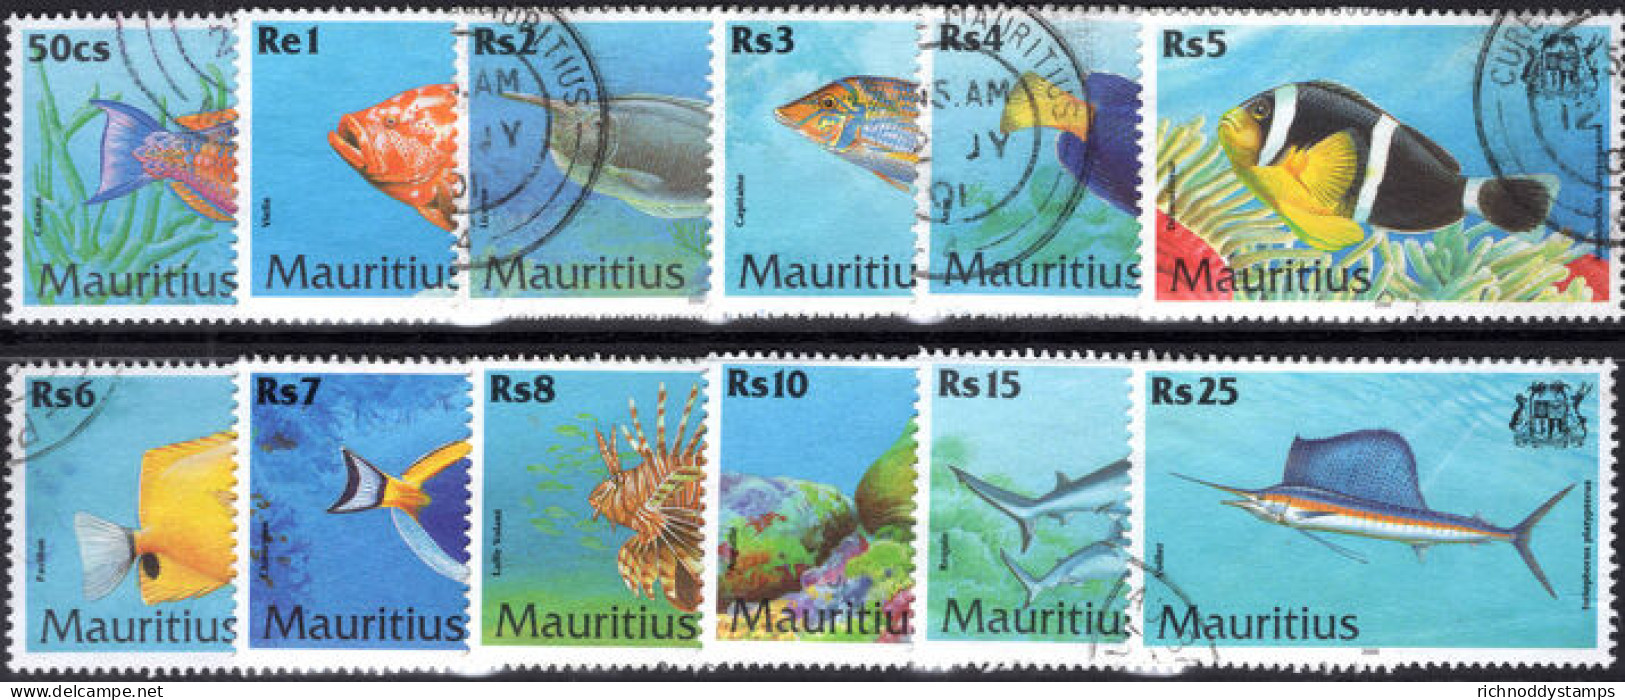 Mauritius 2000 Fish Fine Used. - Mauritius (1968-...)